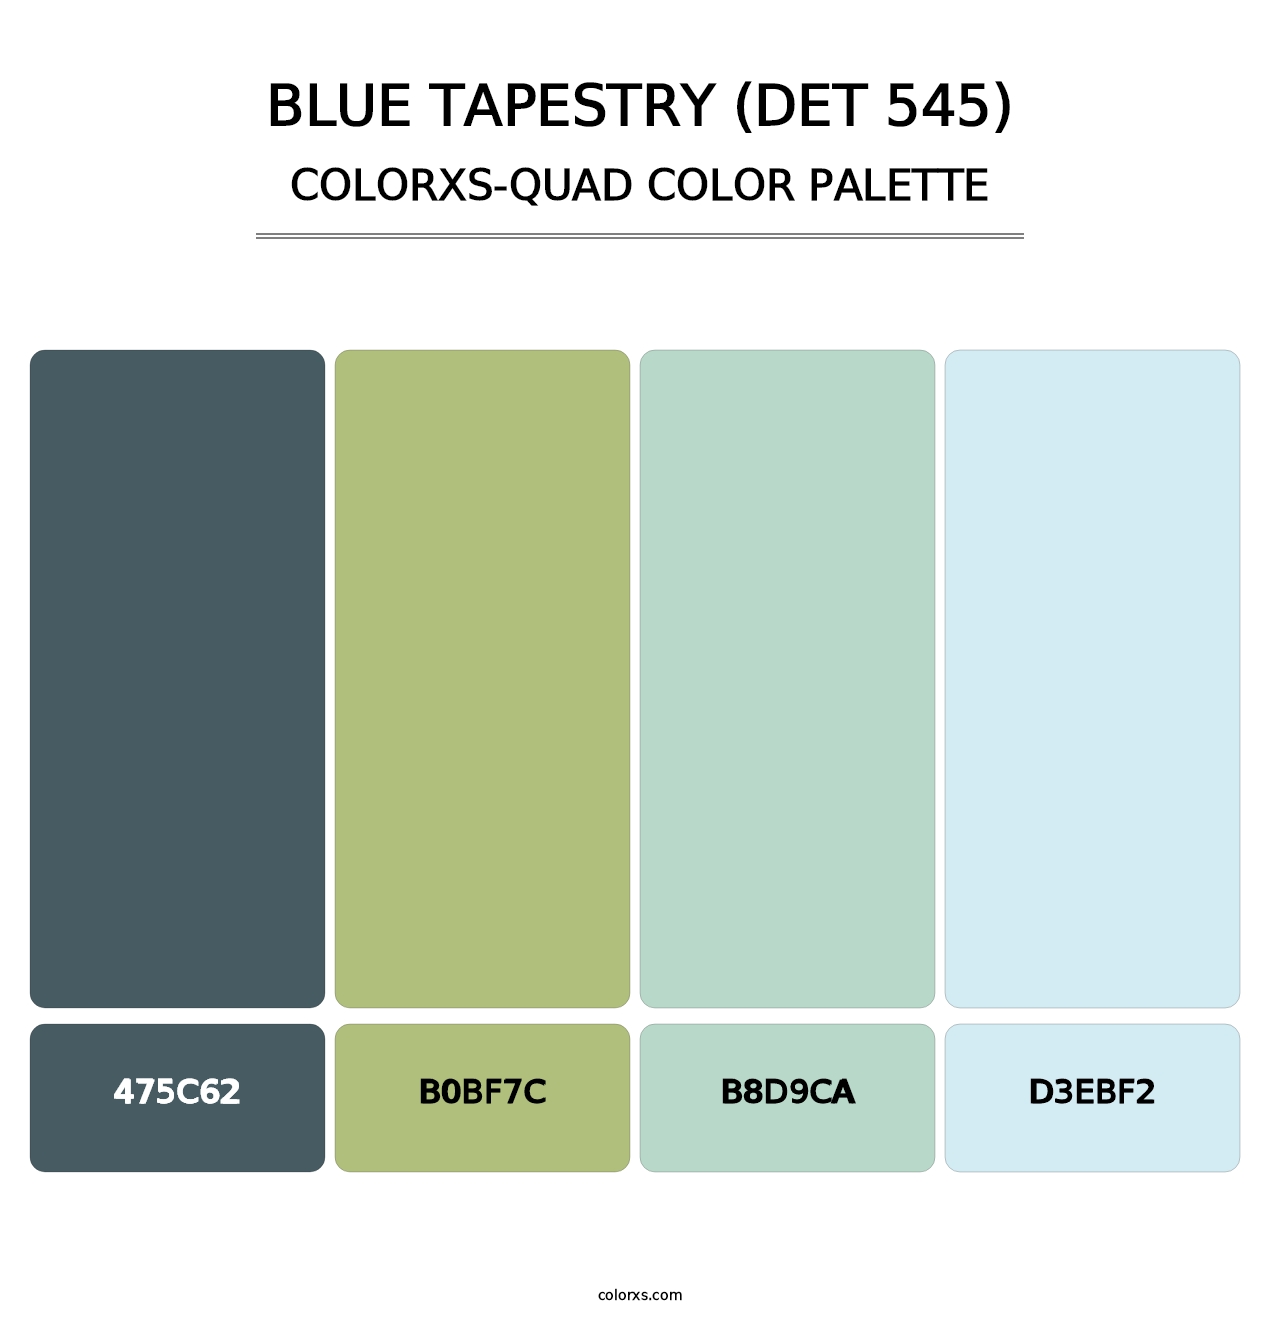 Blue Tapestry (DET 545) - Colorxs Quad Palette